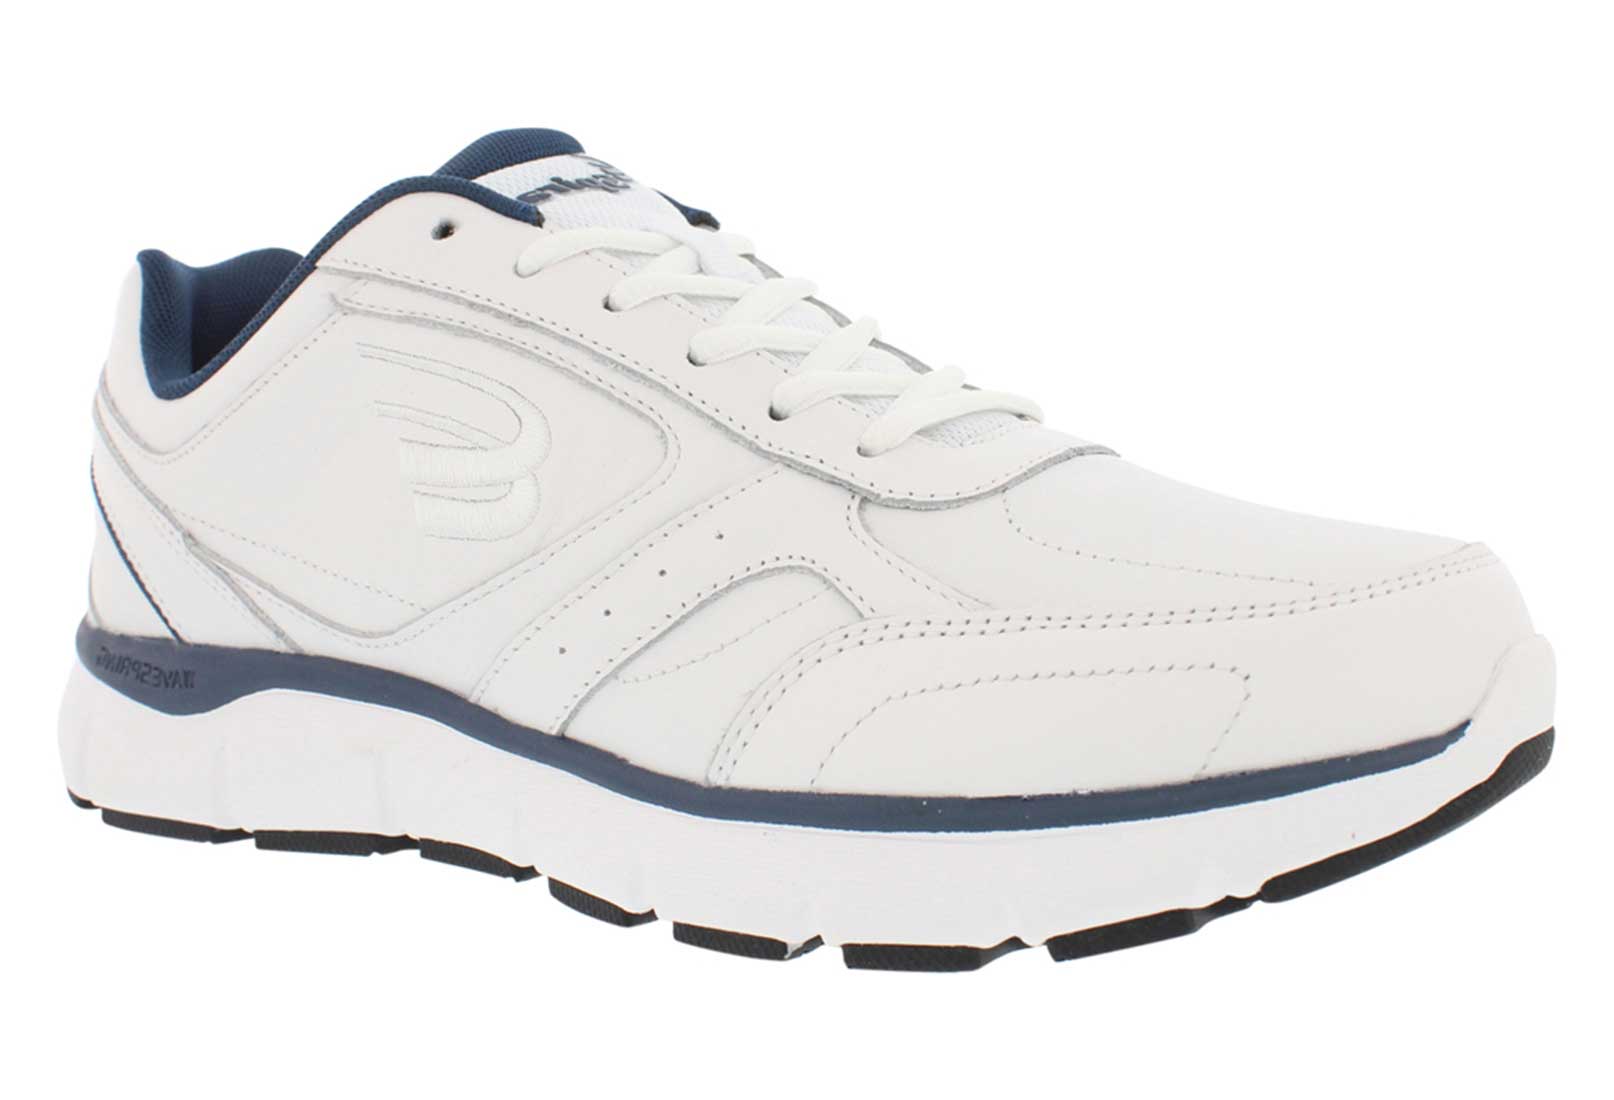 Spira Men's WaveWalker SWAV121 Walking Shoe - Men's Athletic Extra Depth Shoe